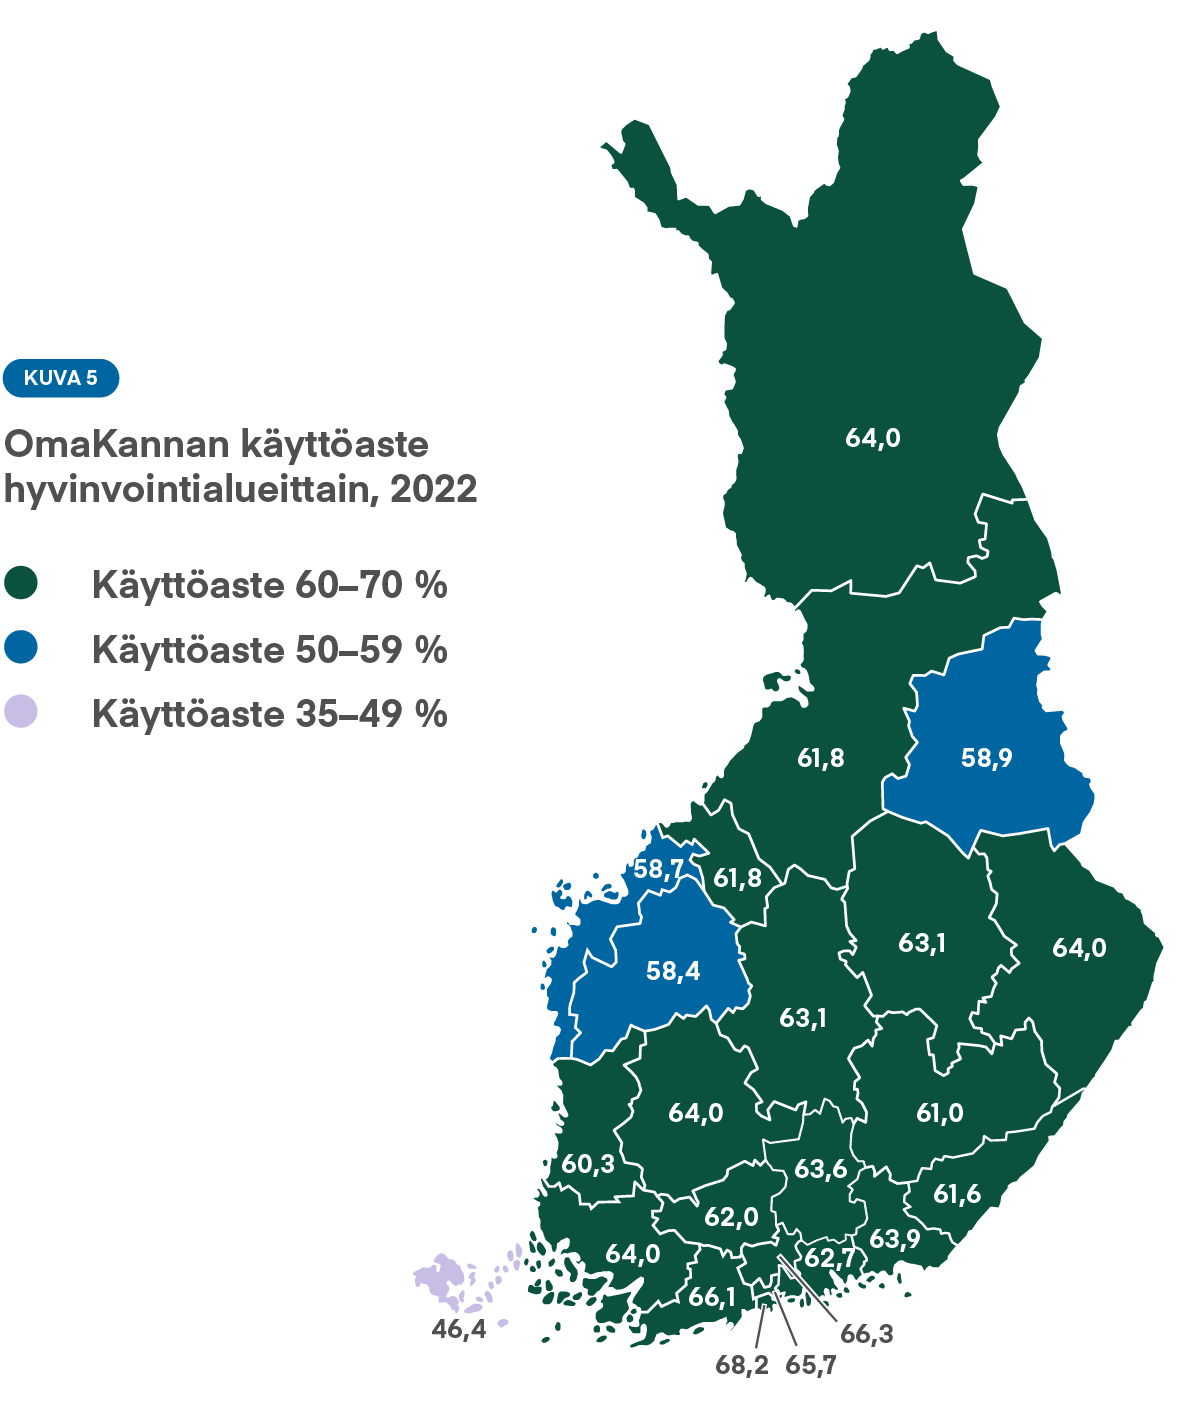 Graafi: Kuva 5 havainnollistaa OmaKannan käyttöastetta hyvinvointialueittain vuonna 2022.